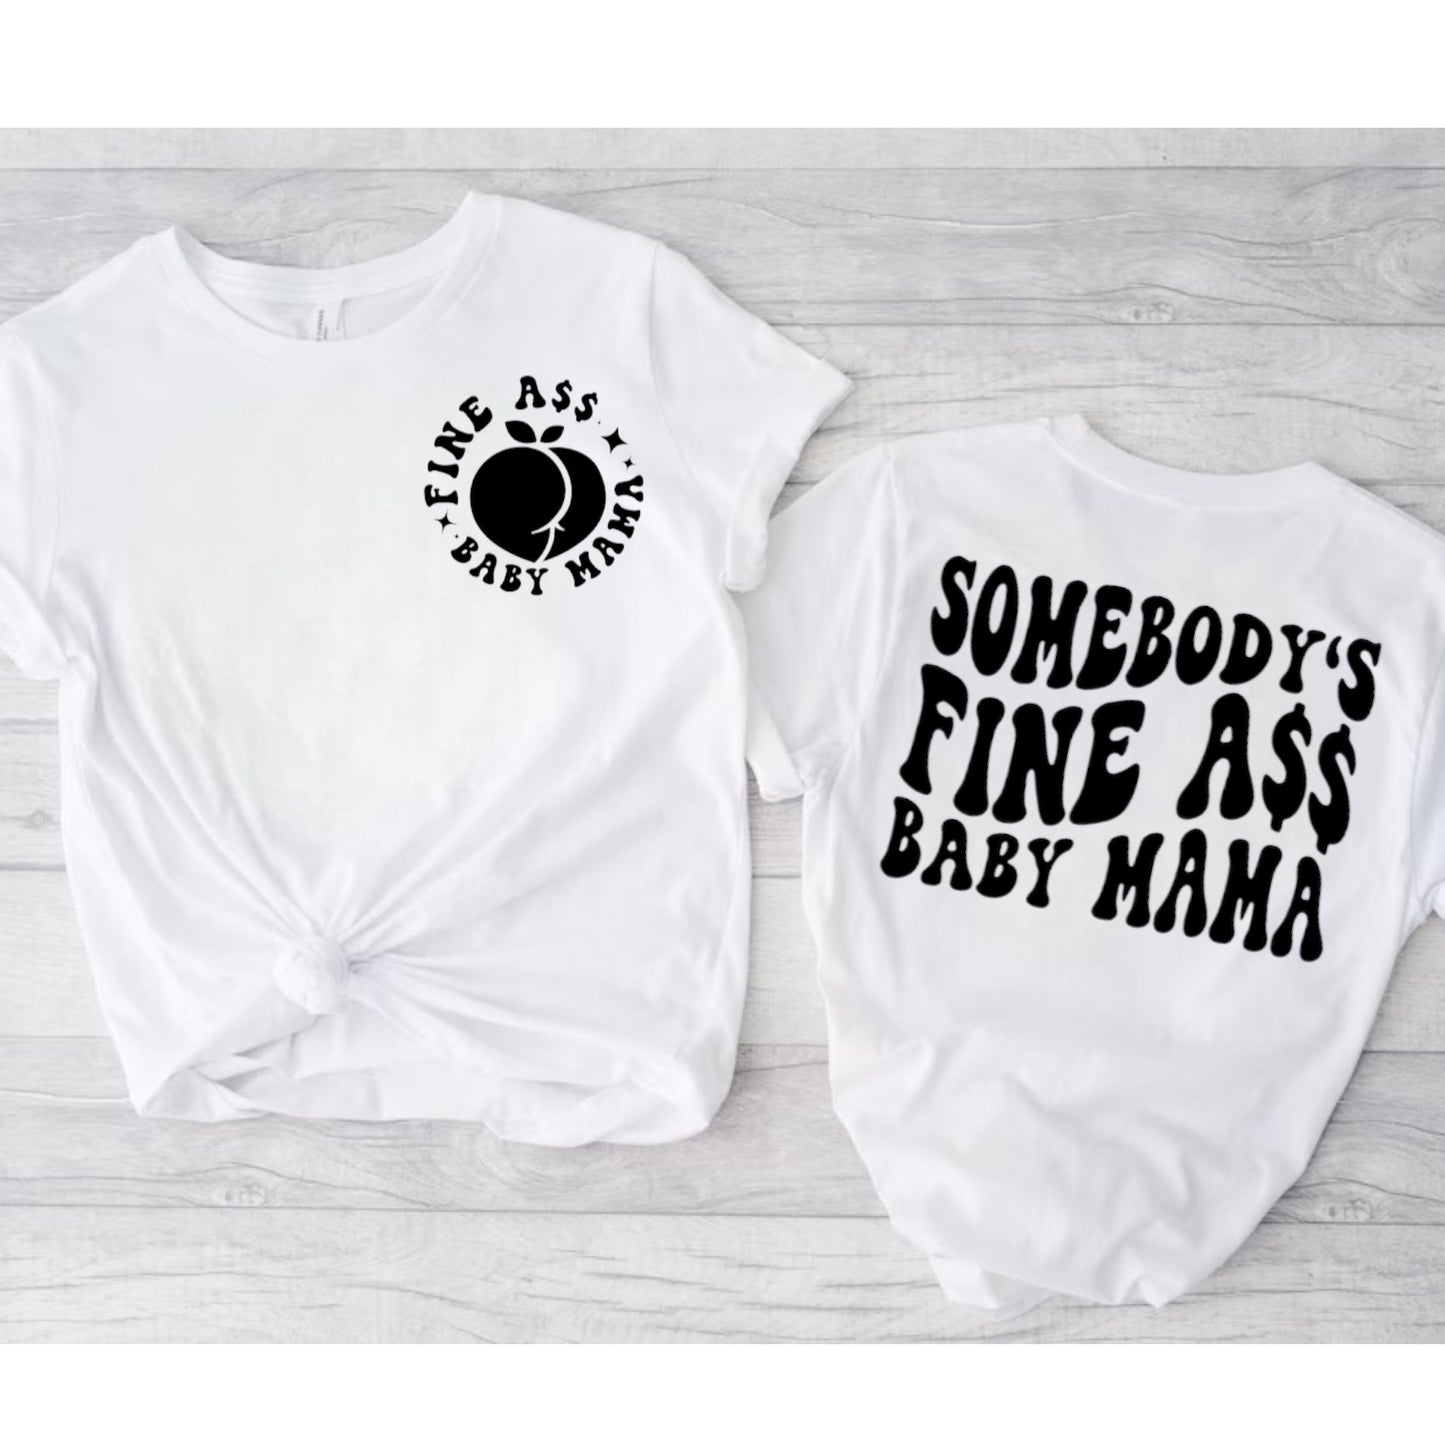 Fine A$$ Mama Crewneck Sweatshirt or Tee